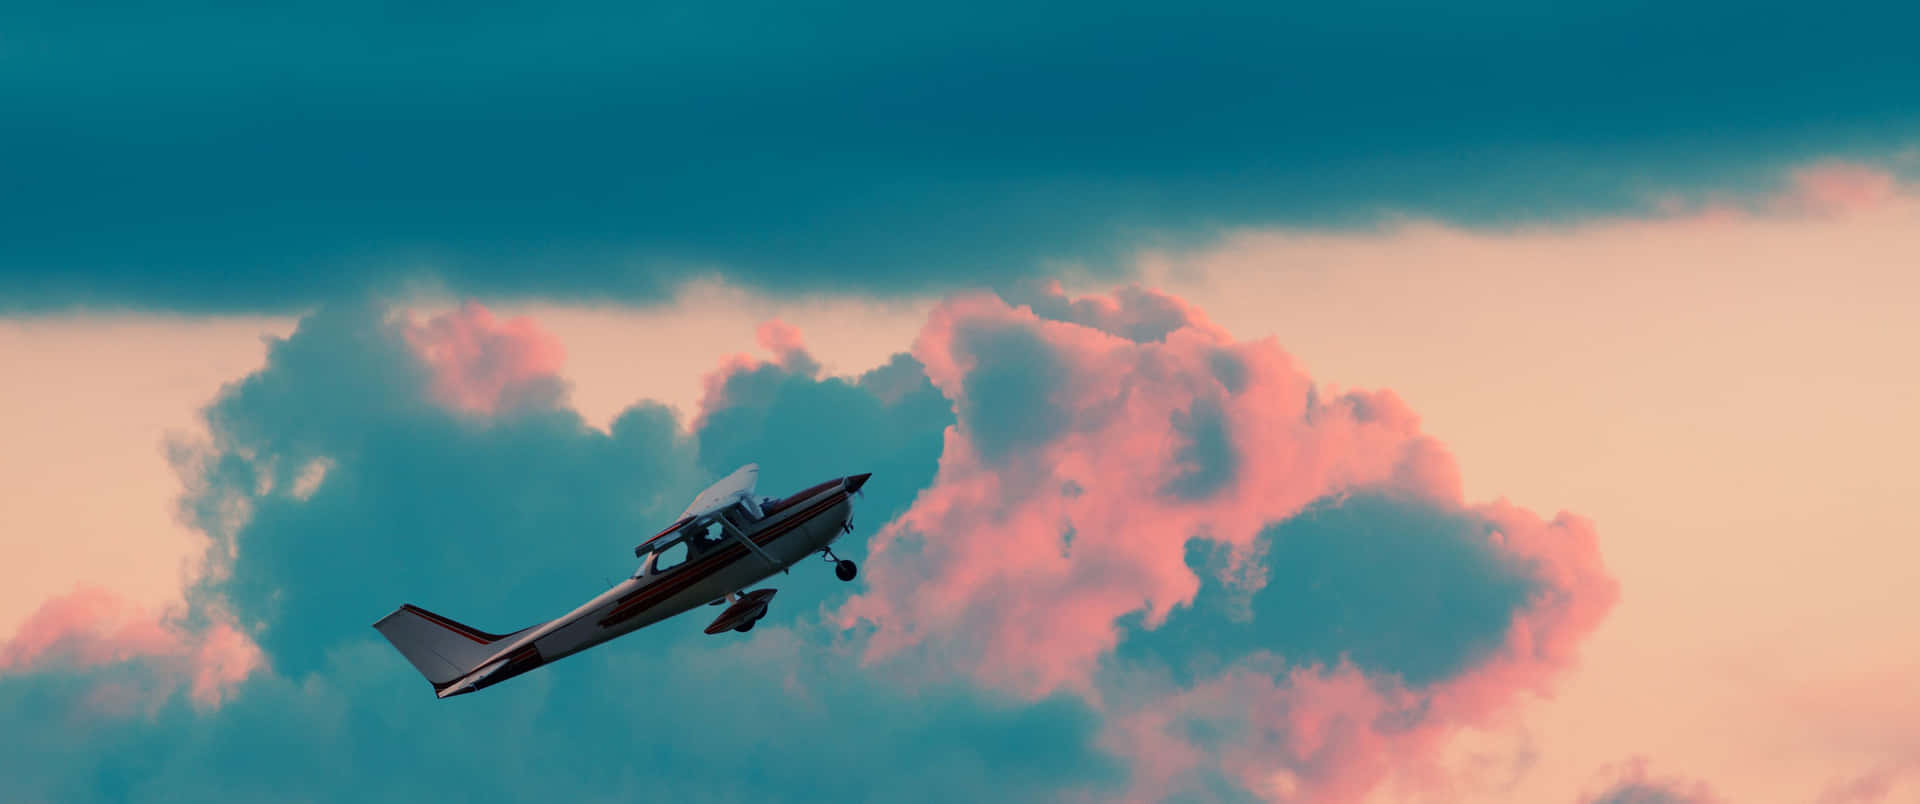 Småfly sejler mod en skyfri himmel.